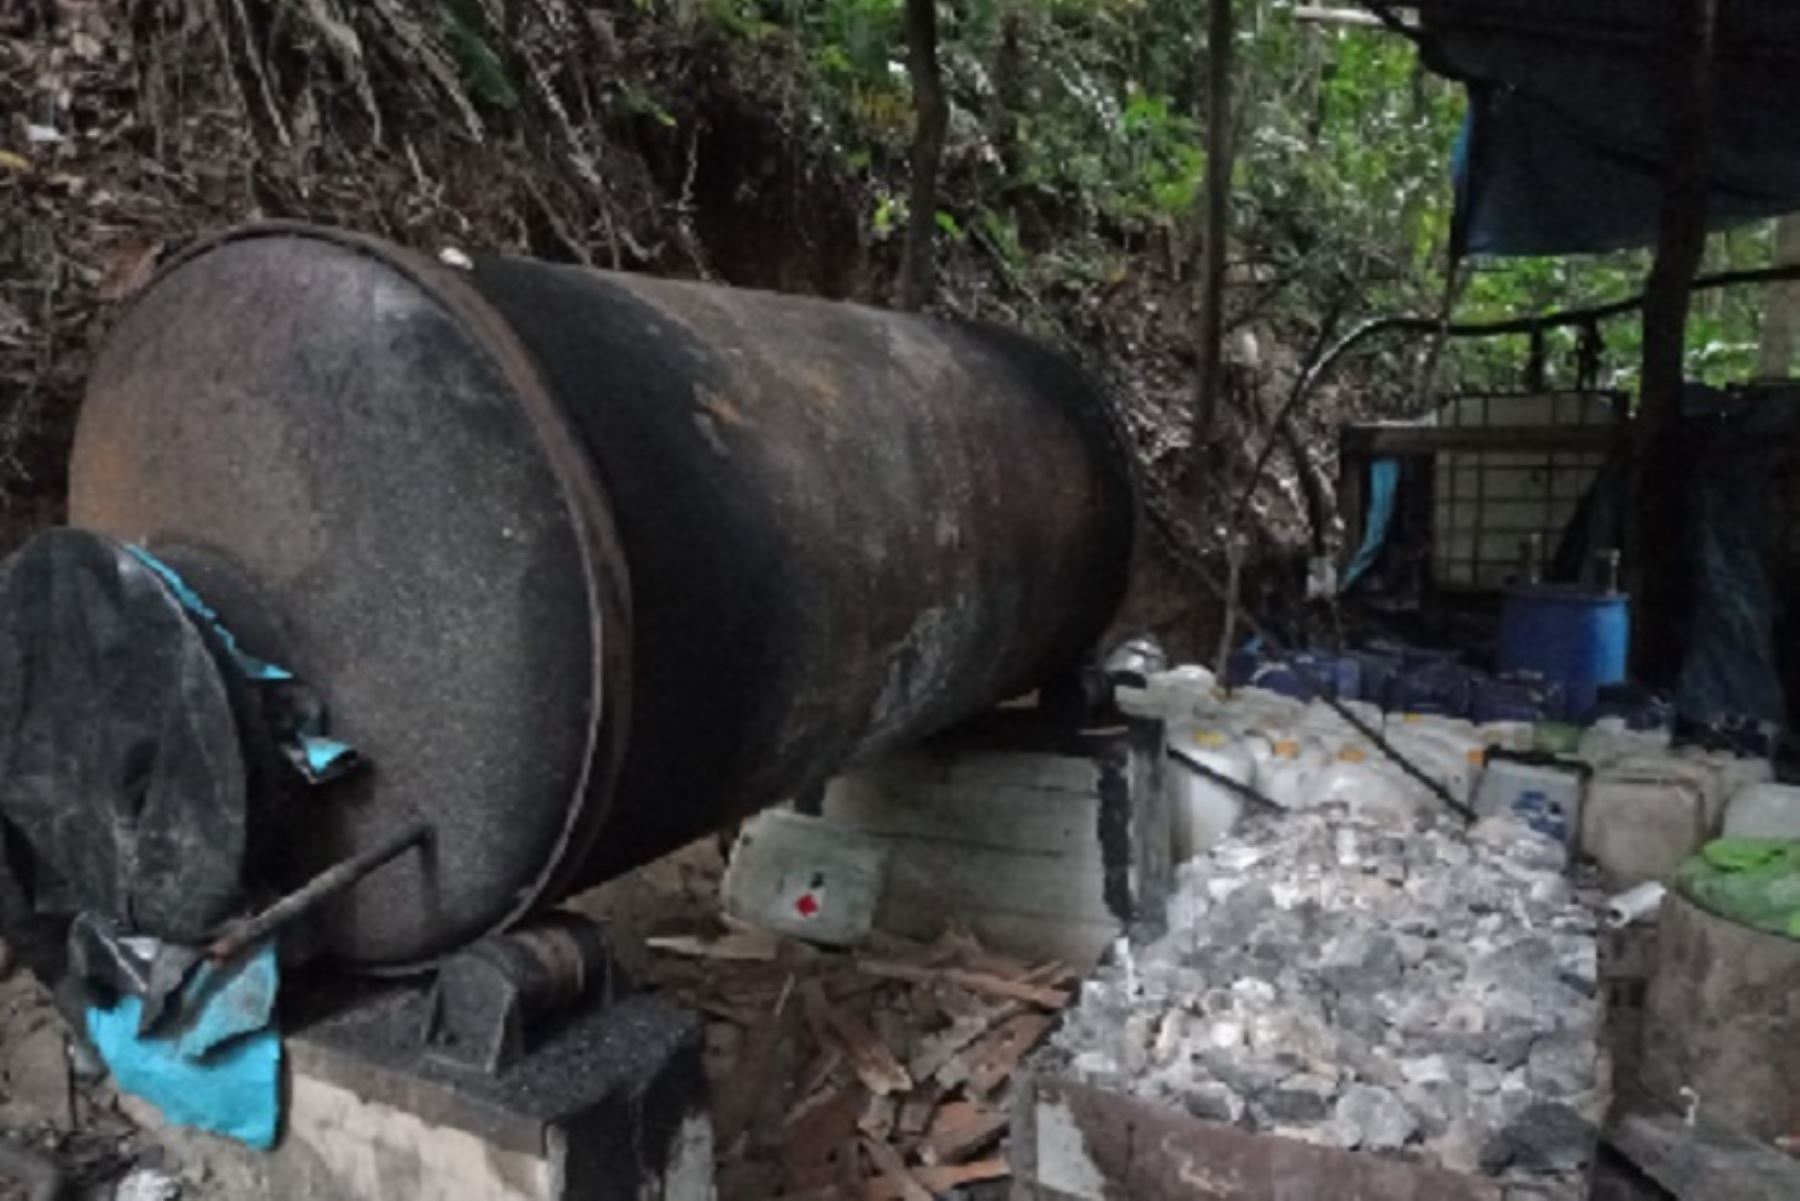 Los efectivos hallaron un total 27 900 kilogramos de arrobas de hoja de coca en proceso de maceración y 29 000 kilogramos de detritus (restos del cultivo procesado). Foto: Policía Nacional.